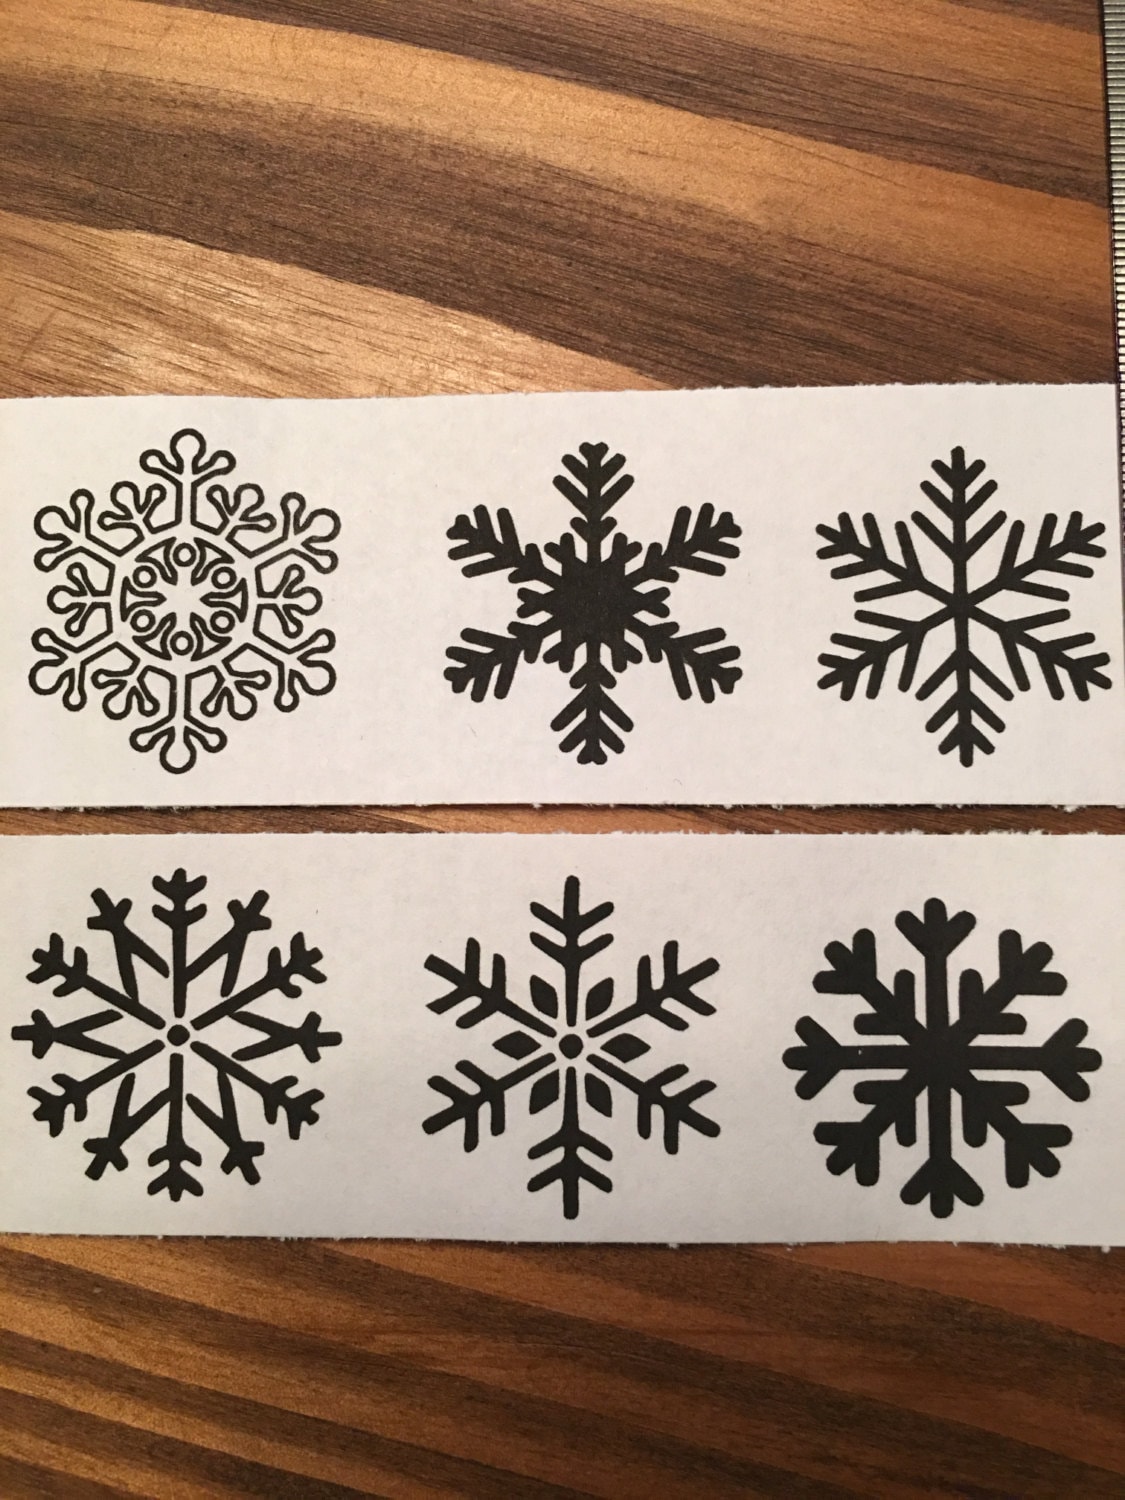 10 Celtic snowflake tattoo ideas  snowflakes snow flake tattoo celtic